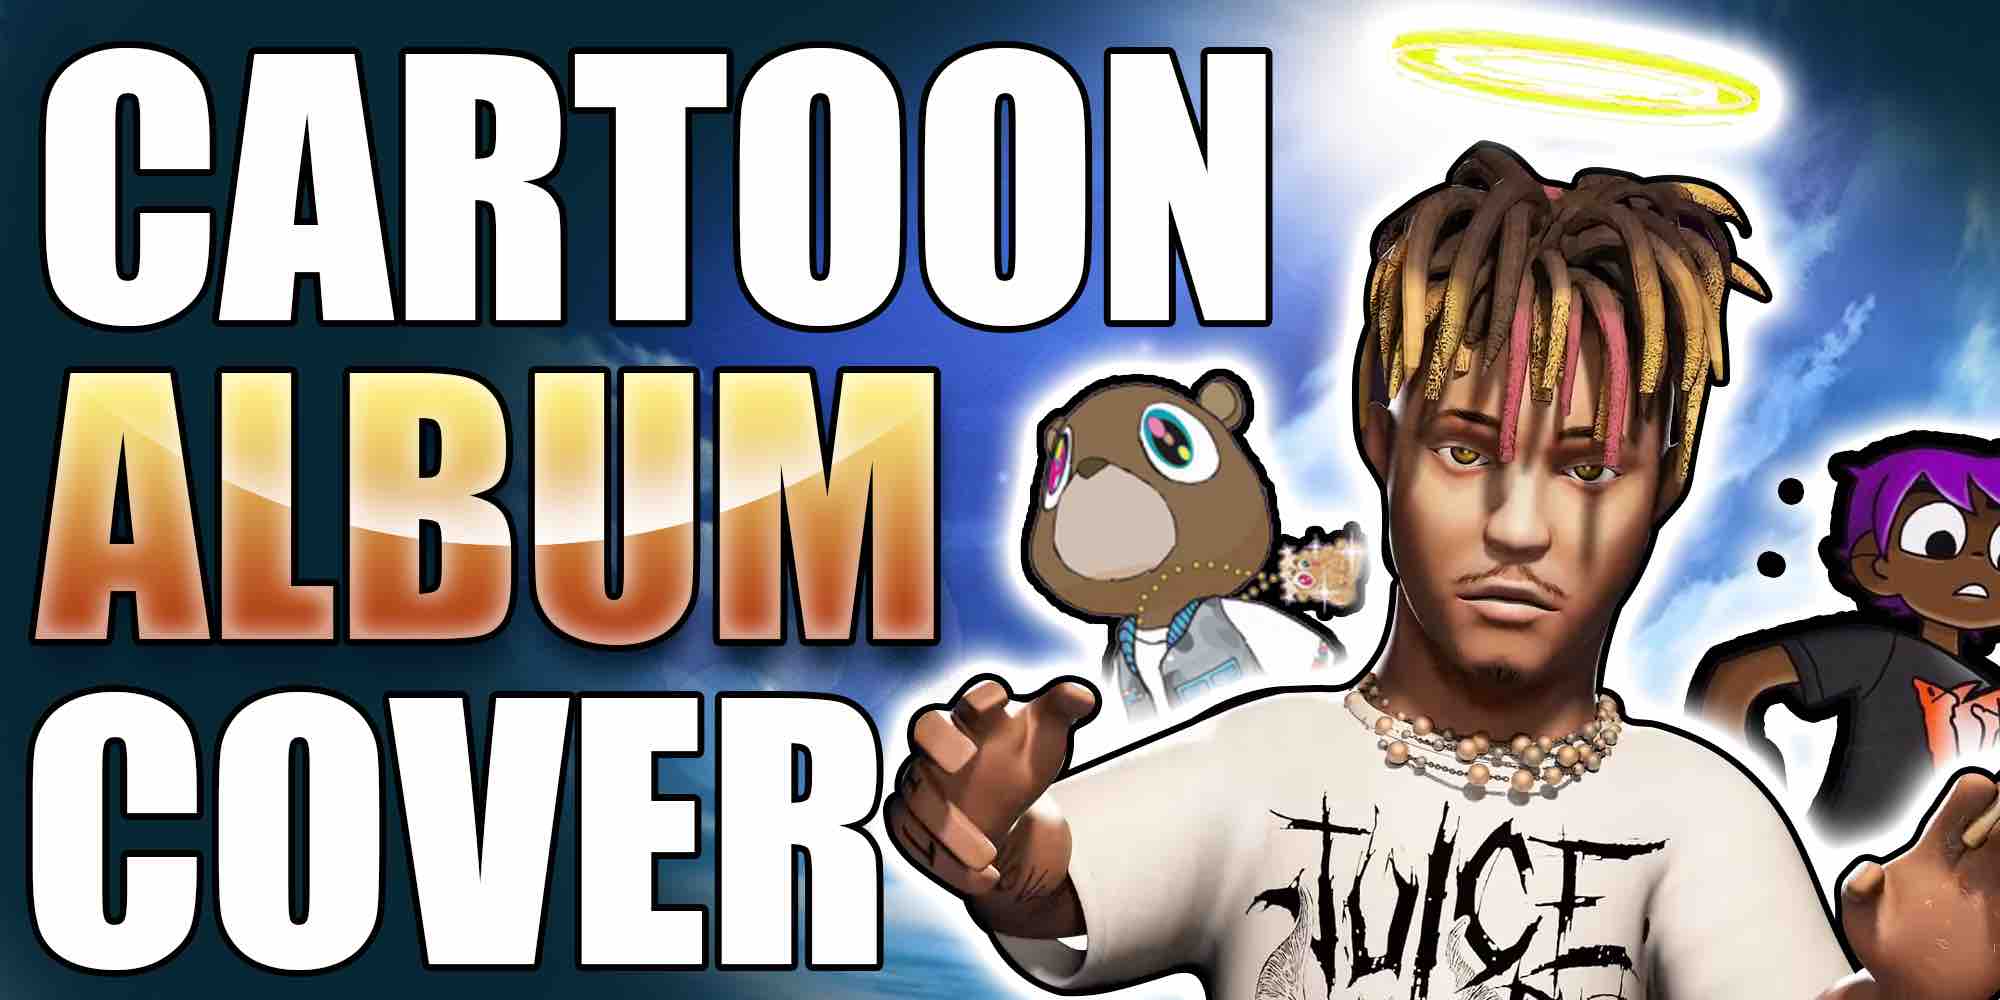 ale strømper Skov Top 10 Cartoon Rapper Album Cover Ideas!